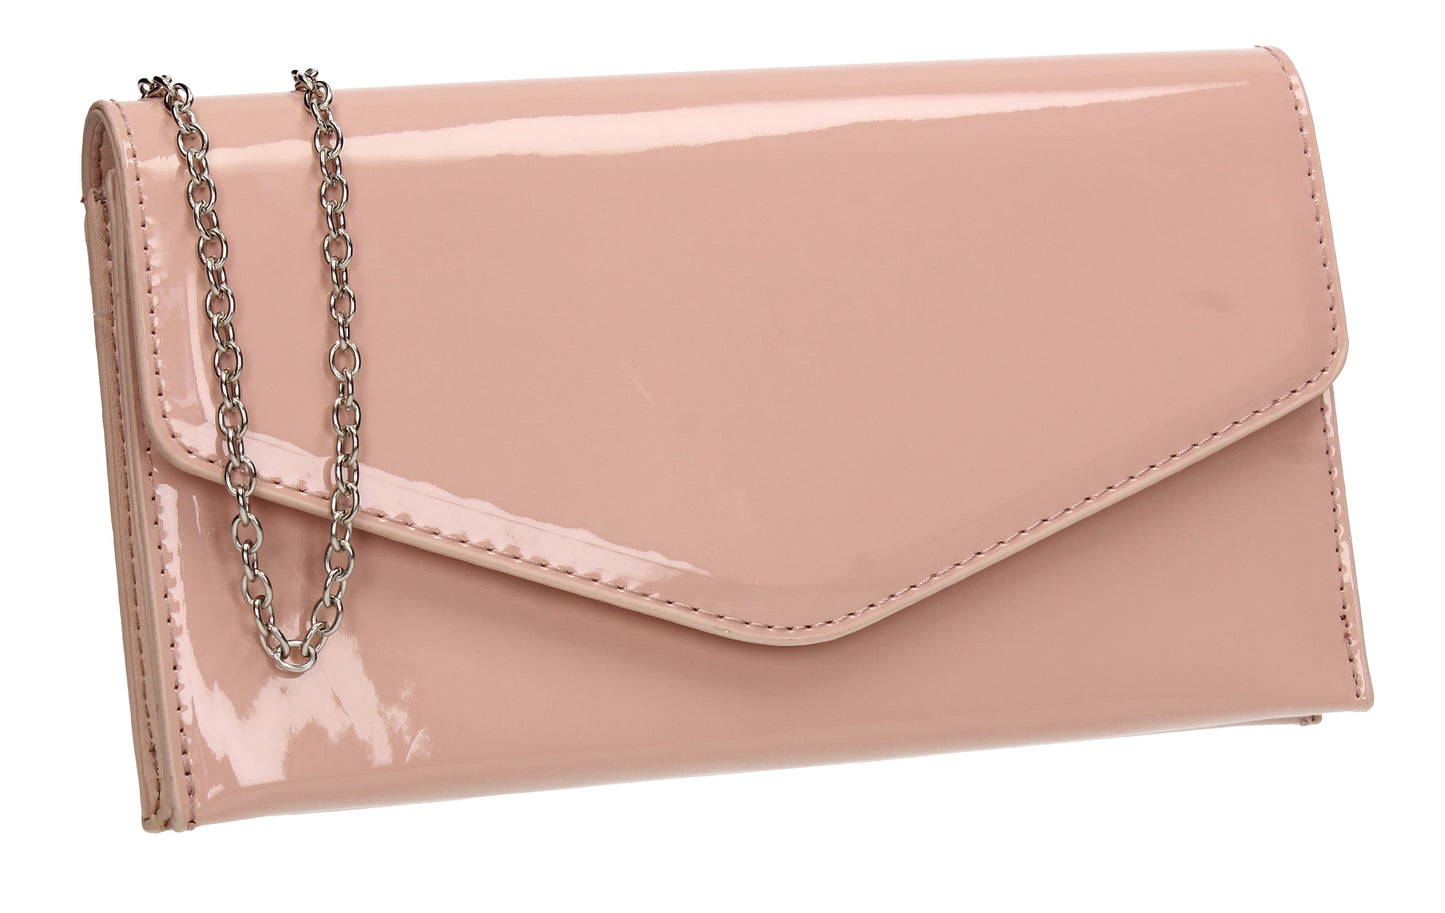 Evie Plain Patent Envelope Clutch Bag Pink